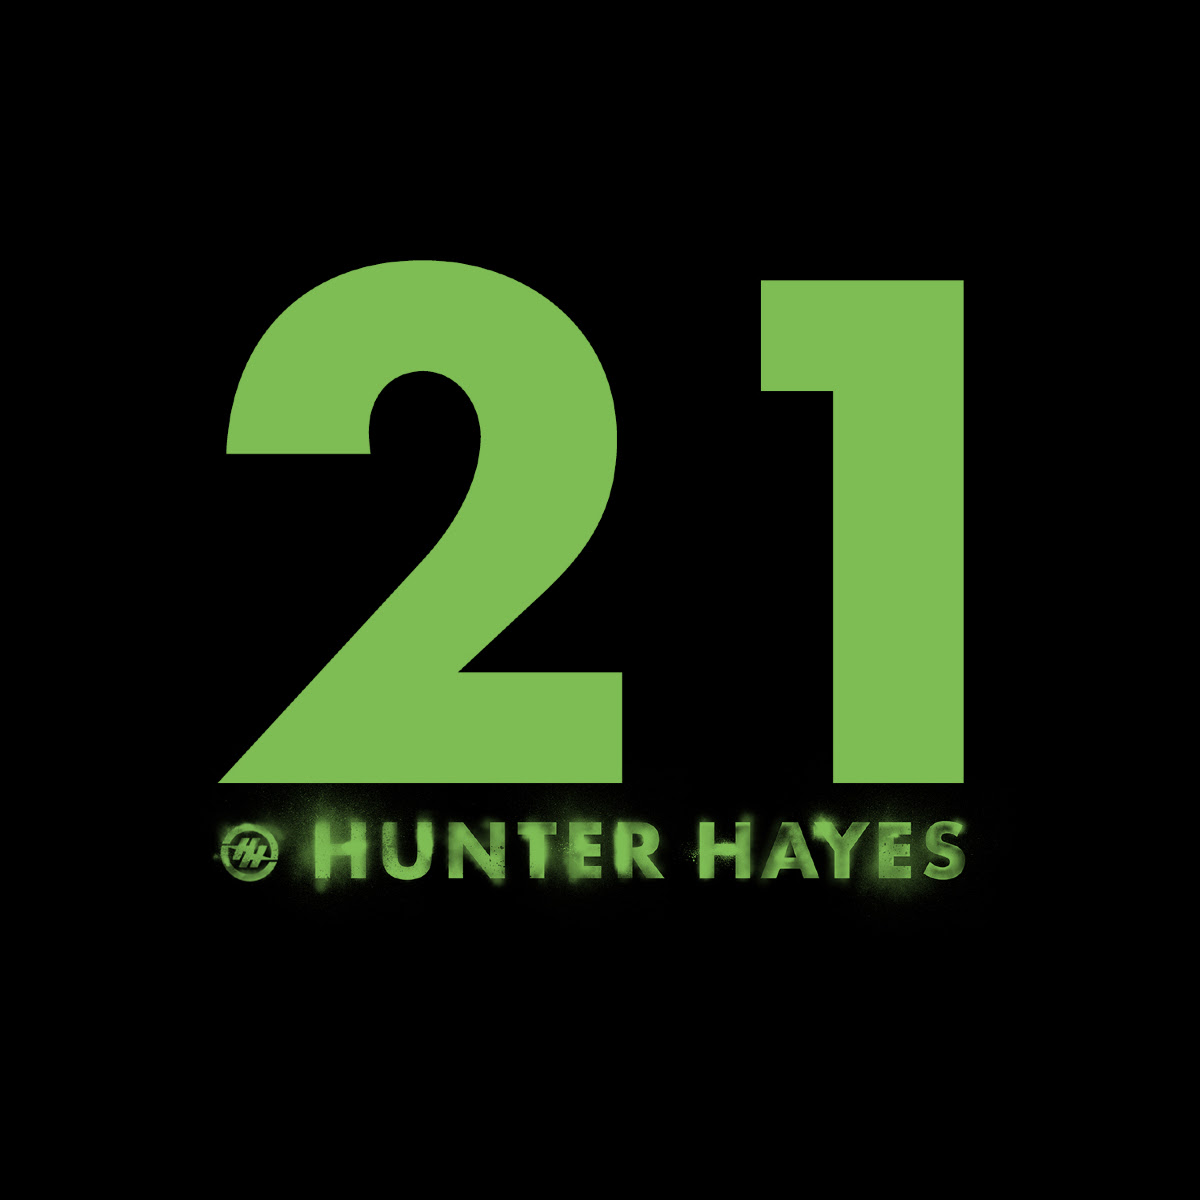 HunterHayes212